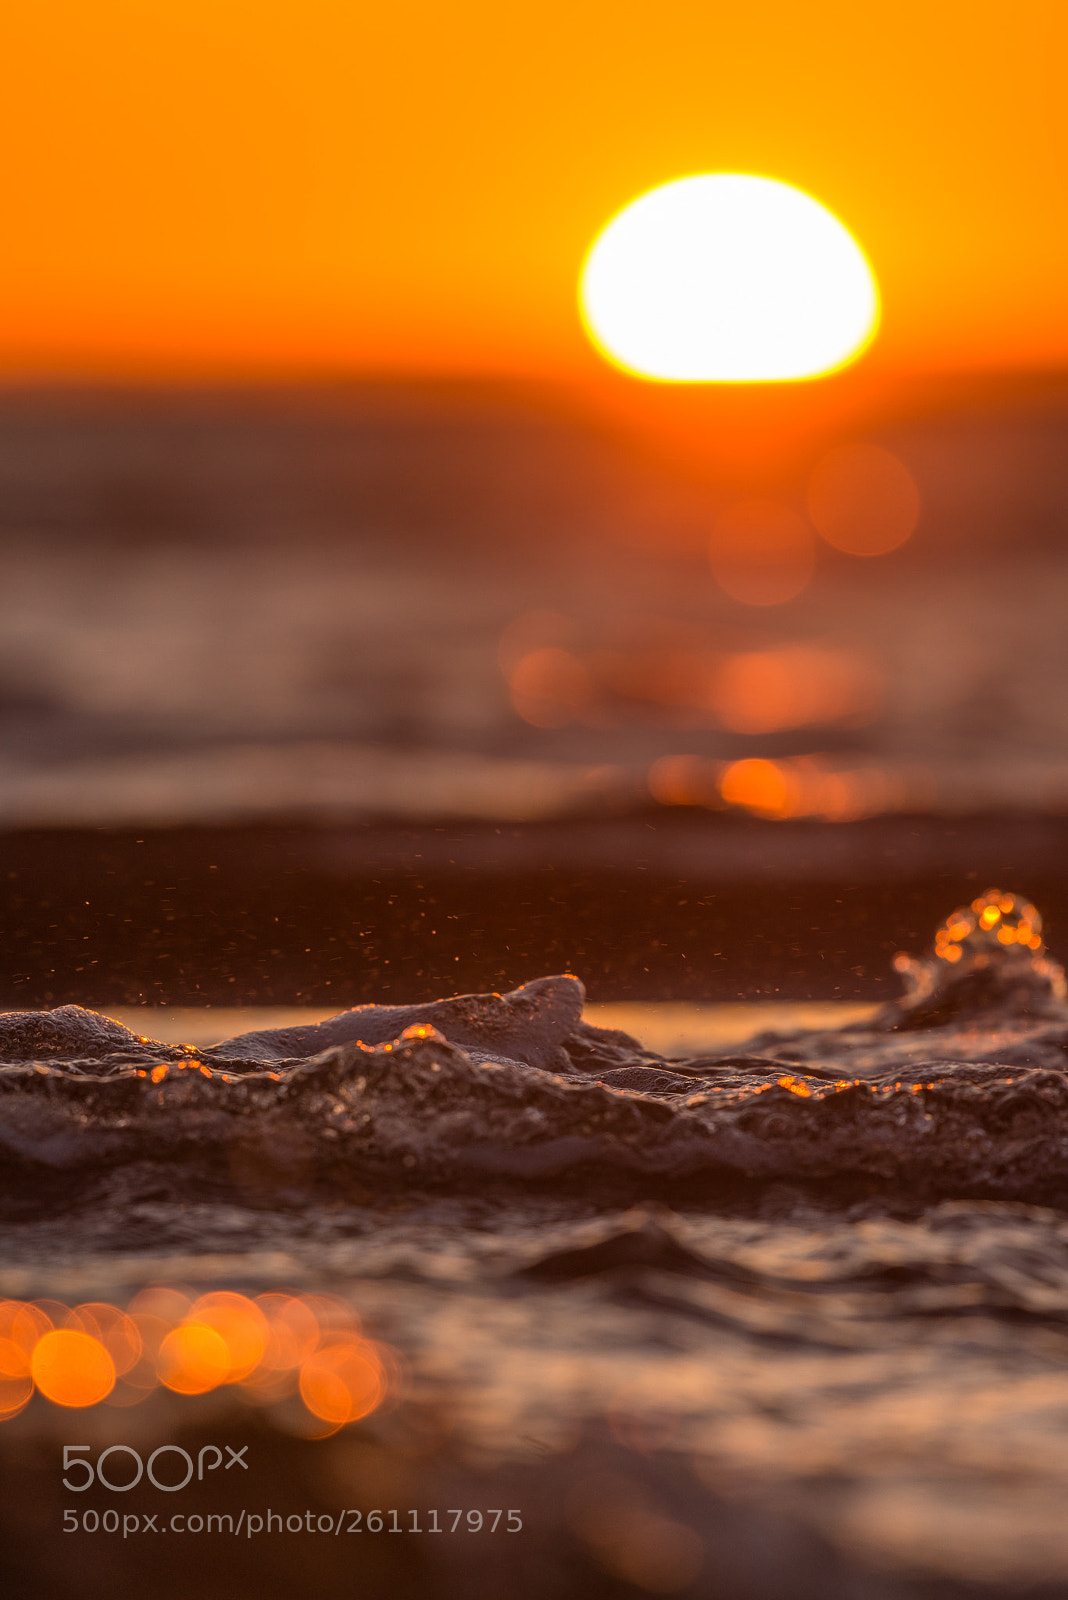 Nikon D800E sample photo. Sunset over sea photography